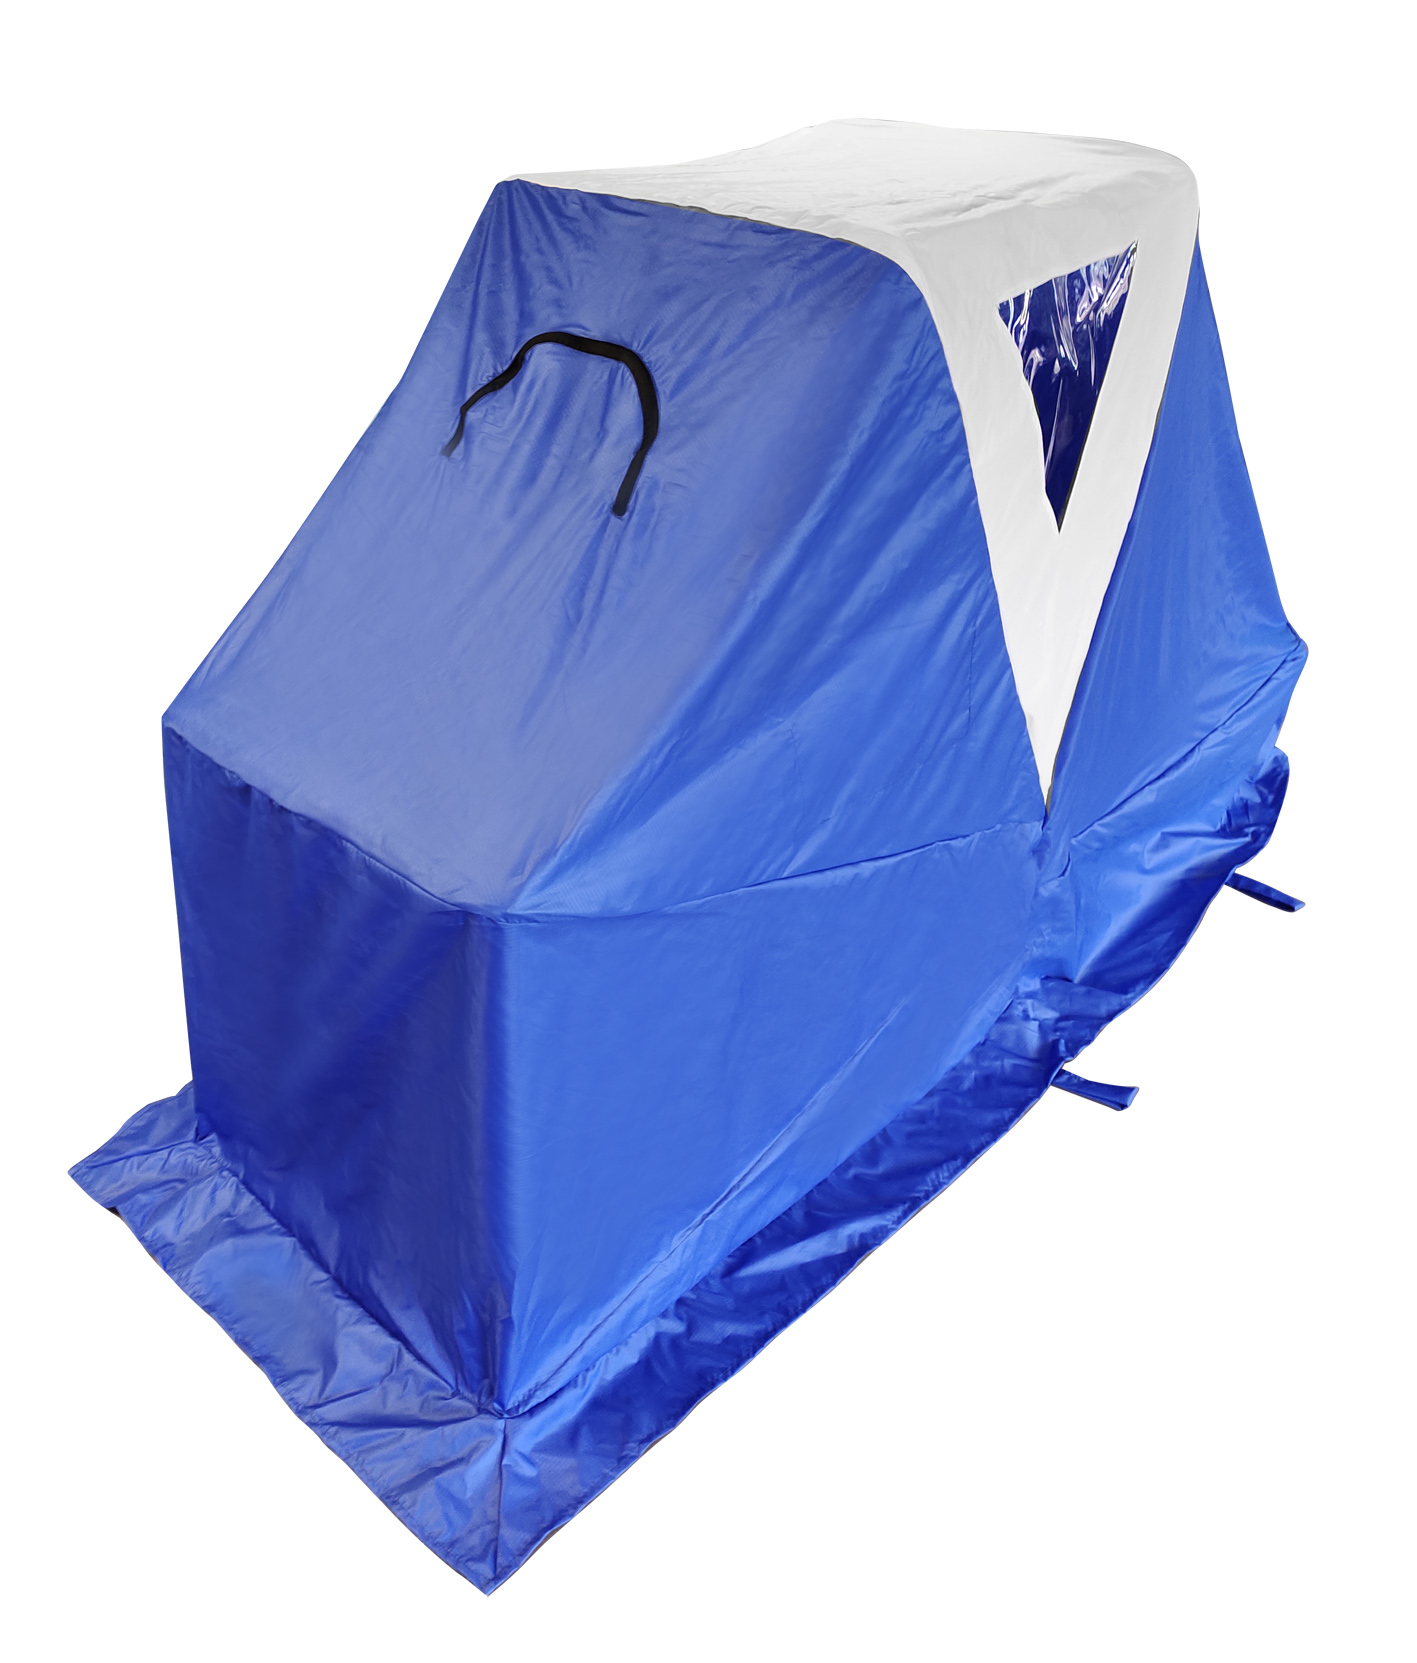 Сани- палатка рыбацкие "Ангара". Тент-палатка для саней large Ice Camo 2255. Зимняя палатка сани циклон. Купить палатку волокуши